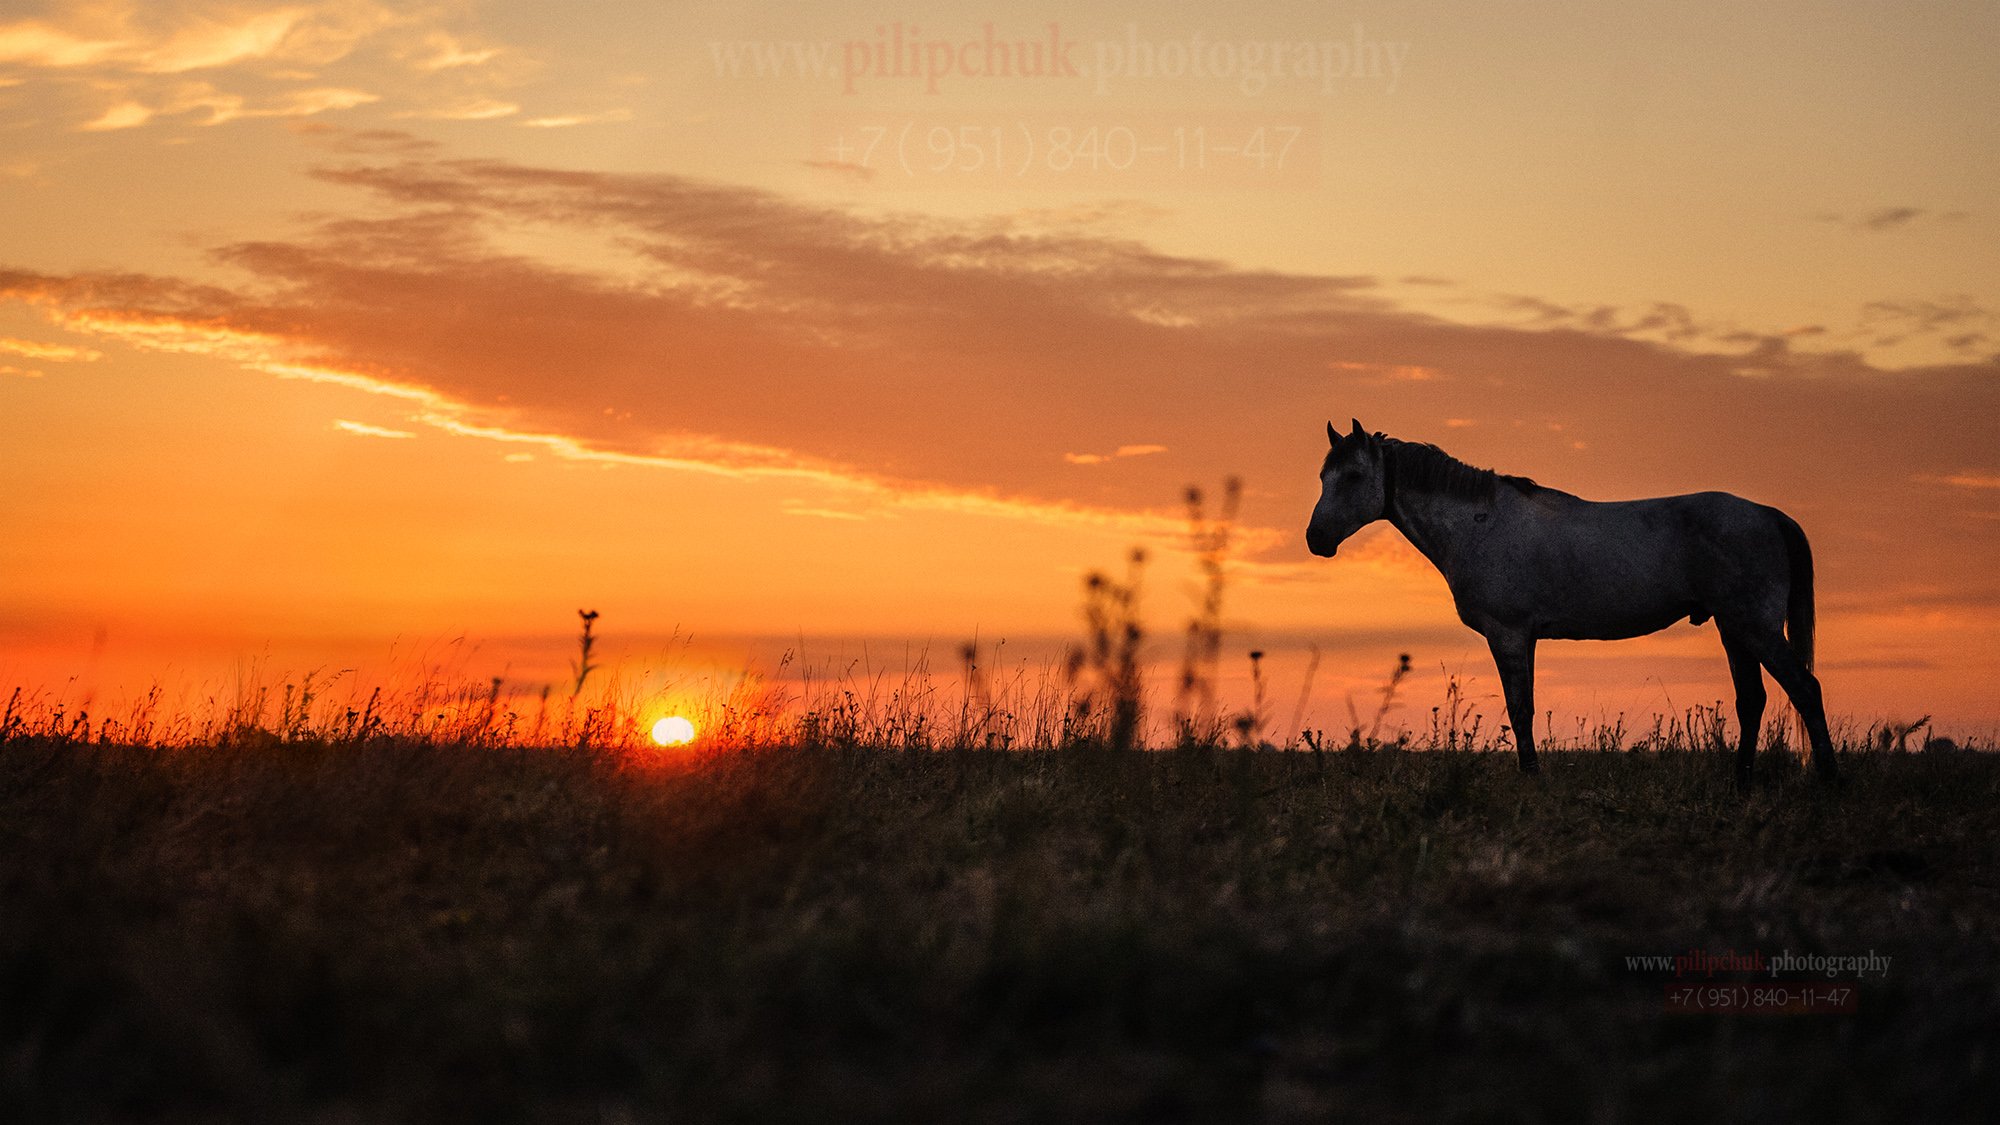 лошадь, пейзаж, восход солнца, в поле лошадь, Пилипчук Константин